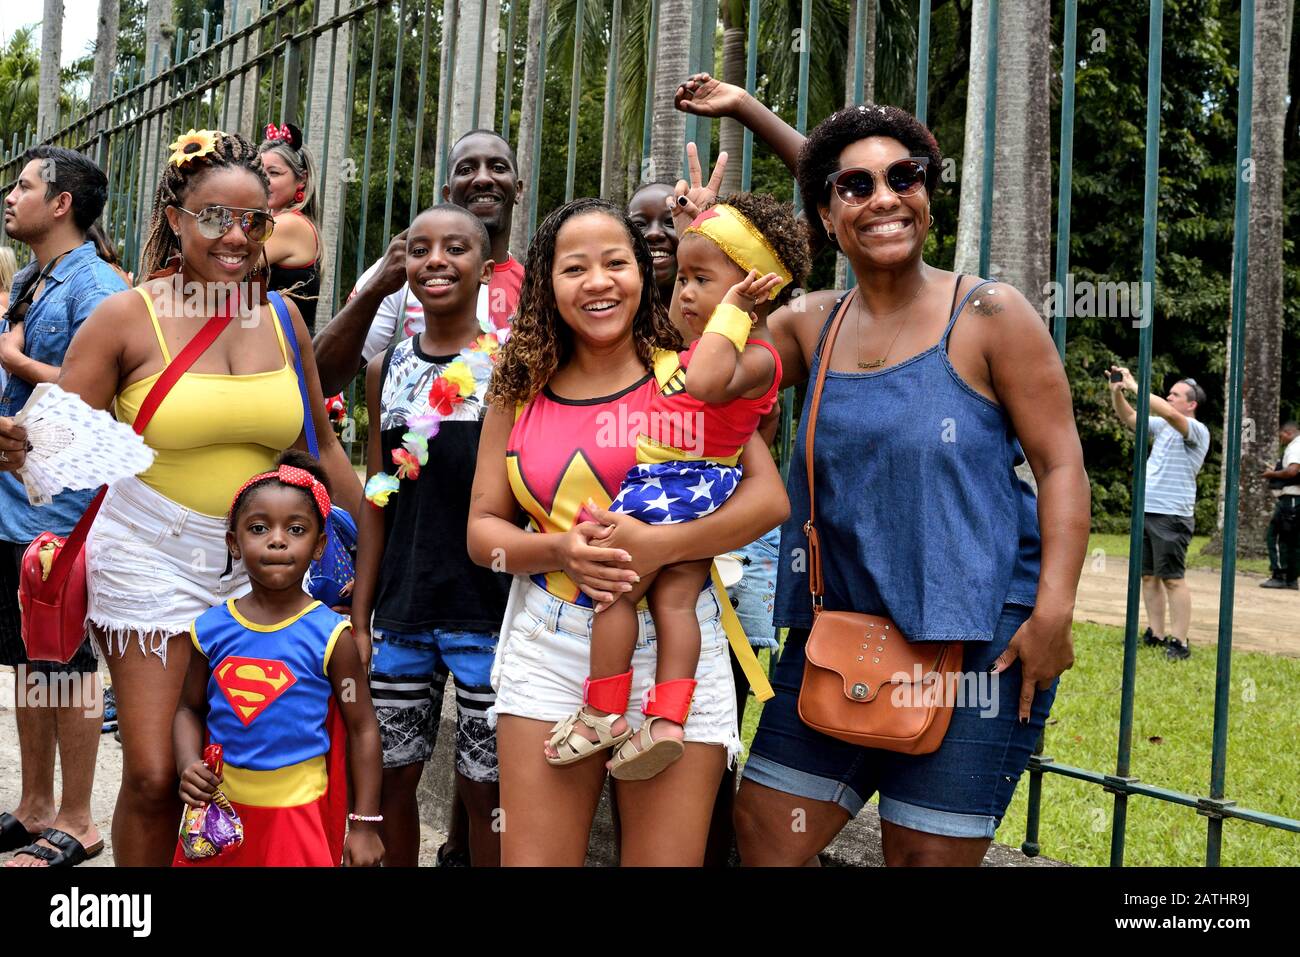 Street Carnival, Südamerika, Brasilien - 17. Februar 2019: Eine brasilianische Familie, die während einer Karnevalsparty in Rio de Janeiro so viel Spaß hat. Stockfoto